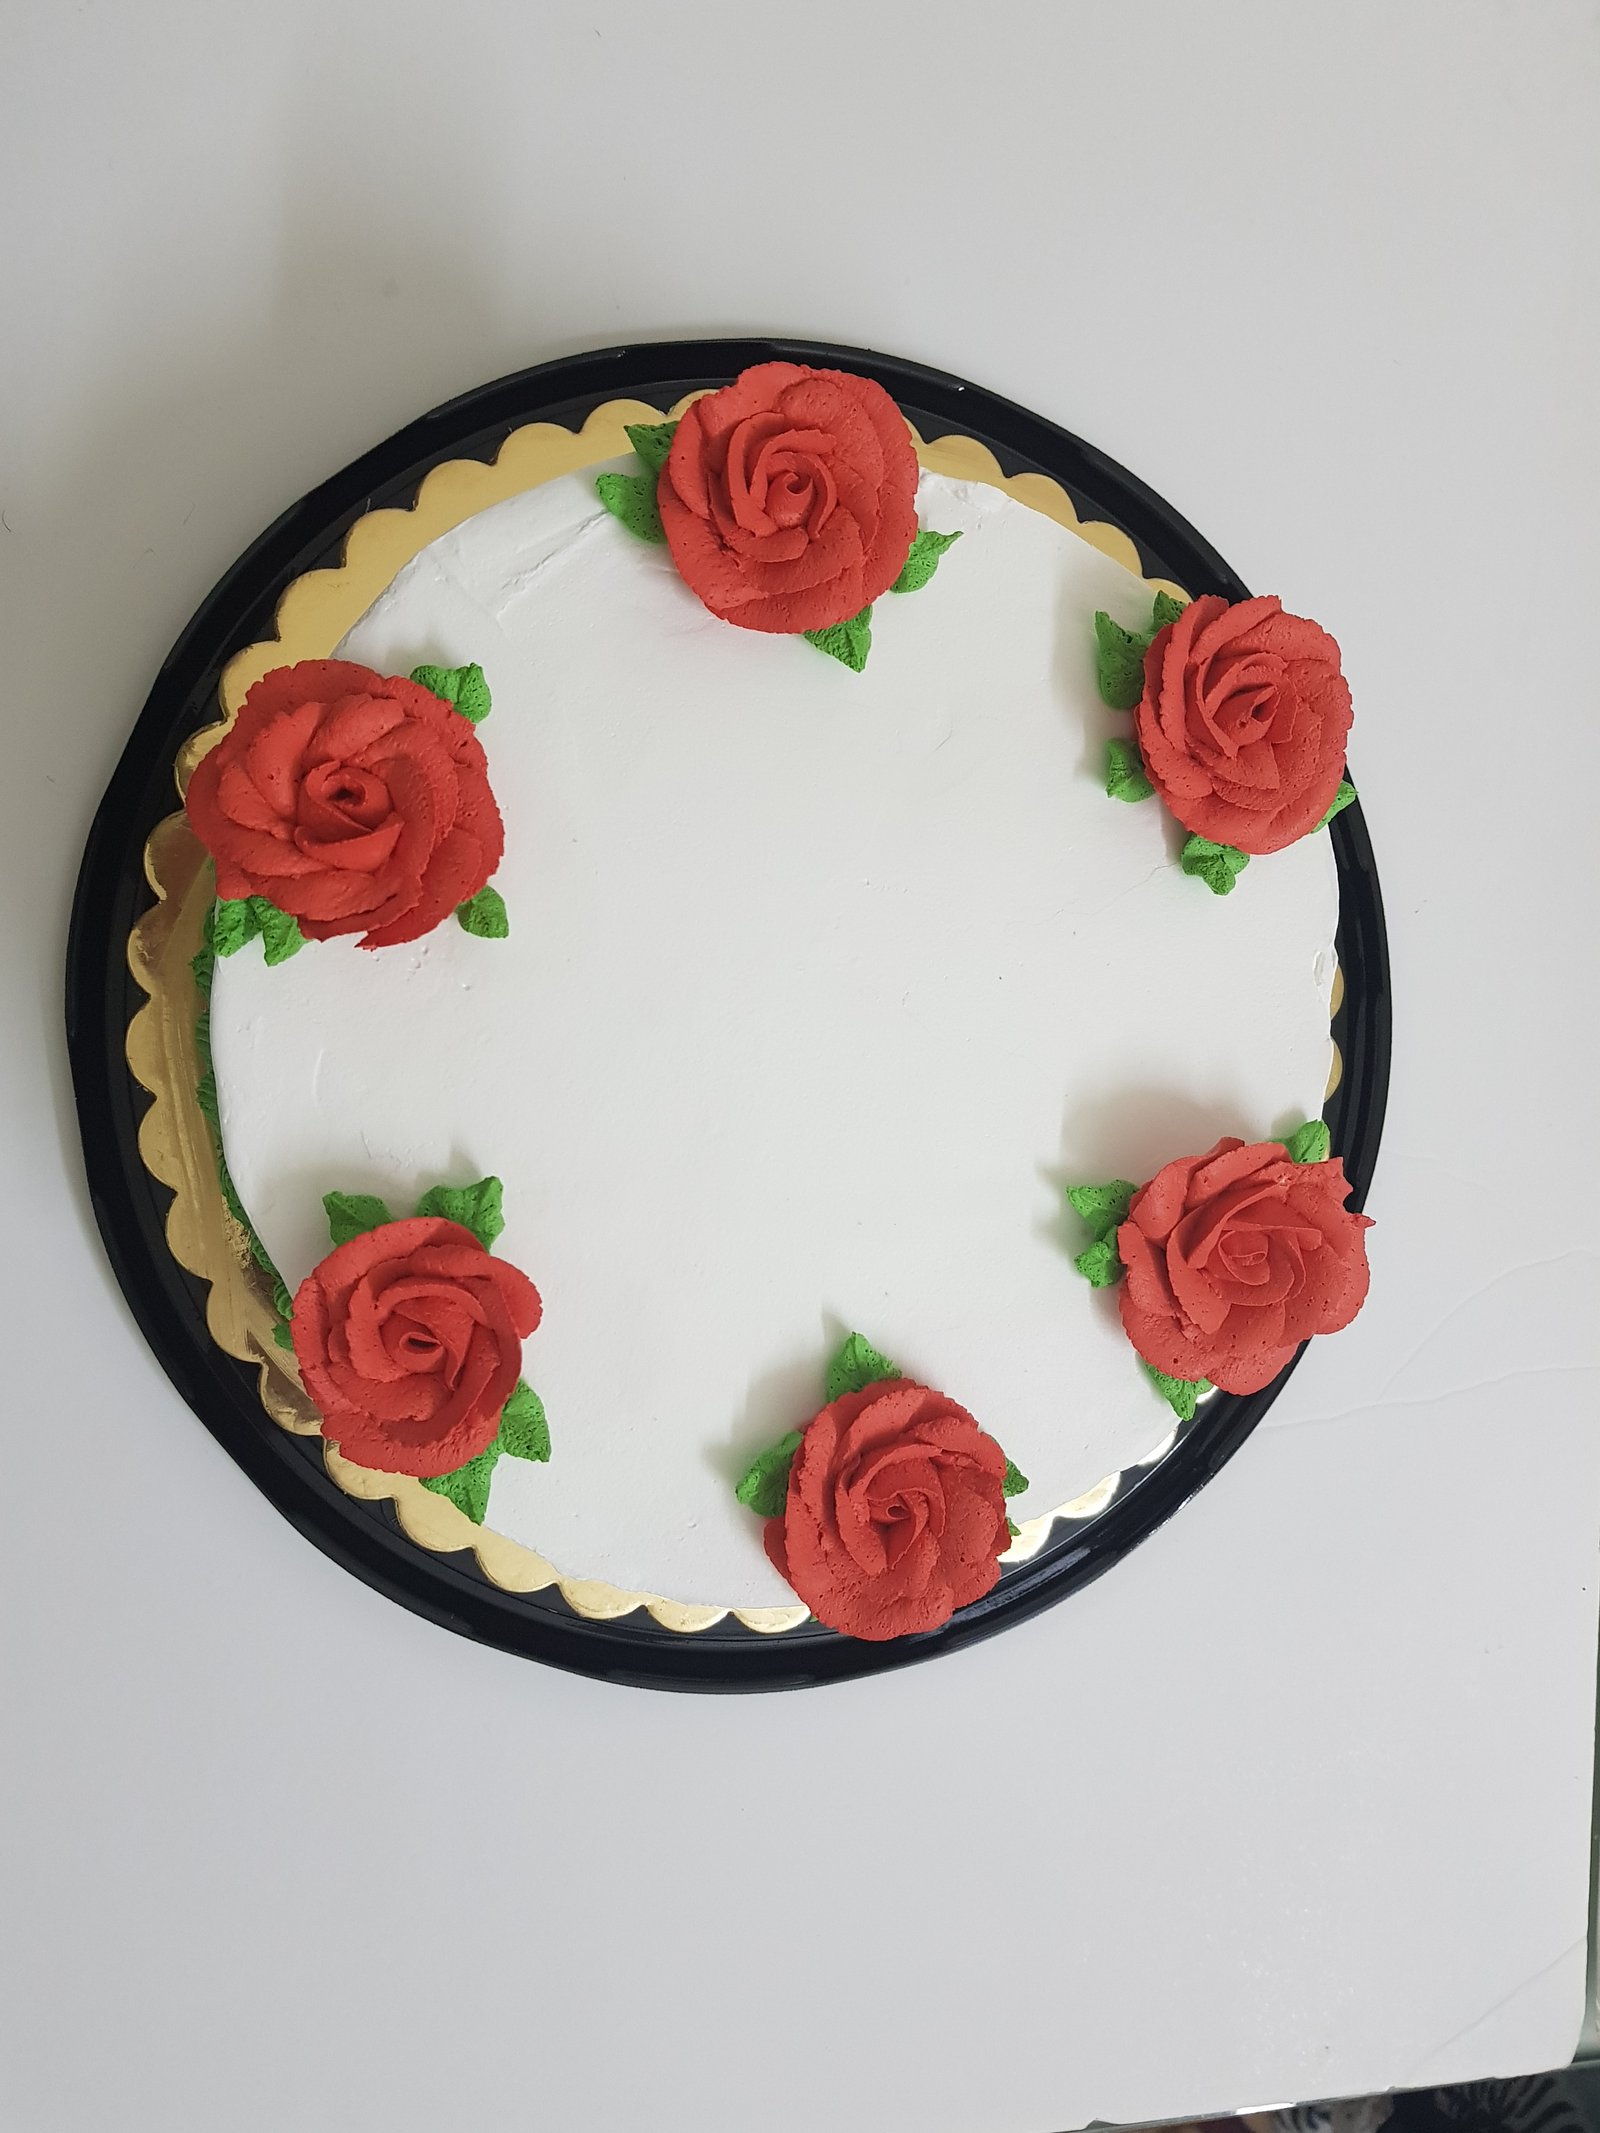 Cascading Roses Cake Design | DecoPac